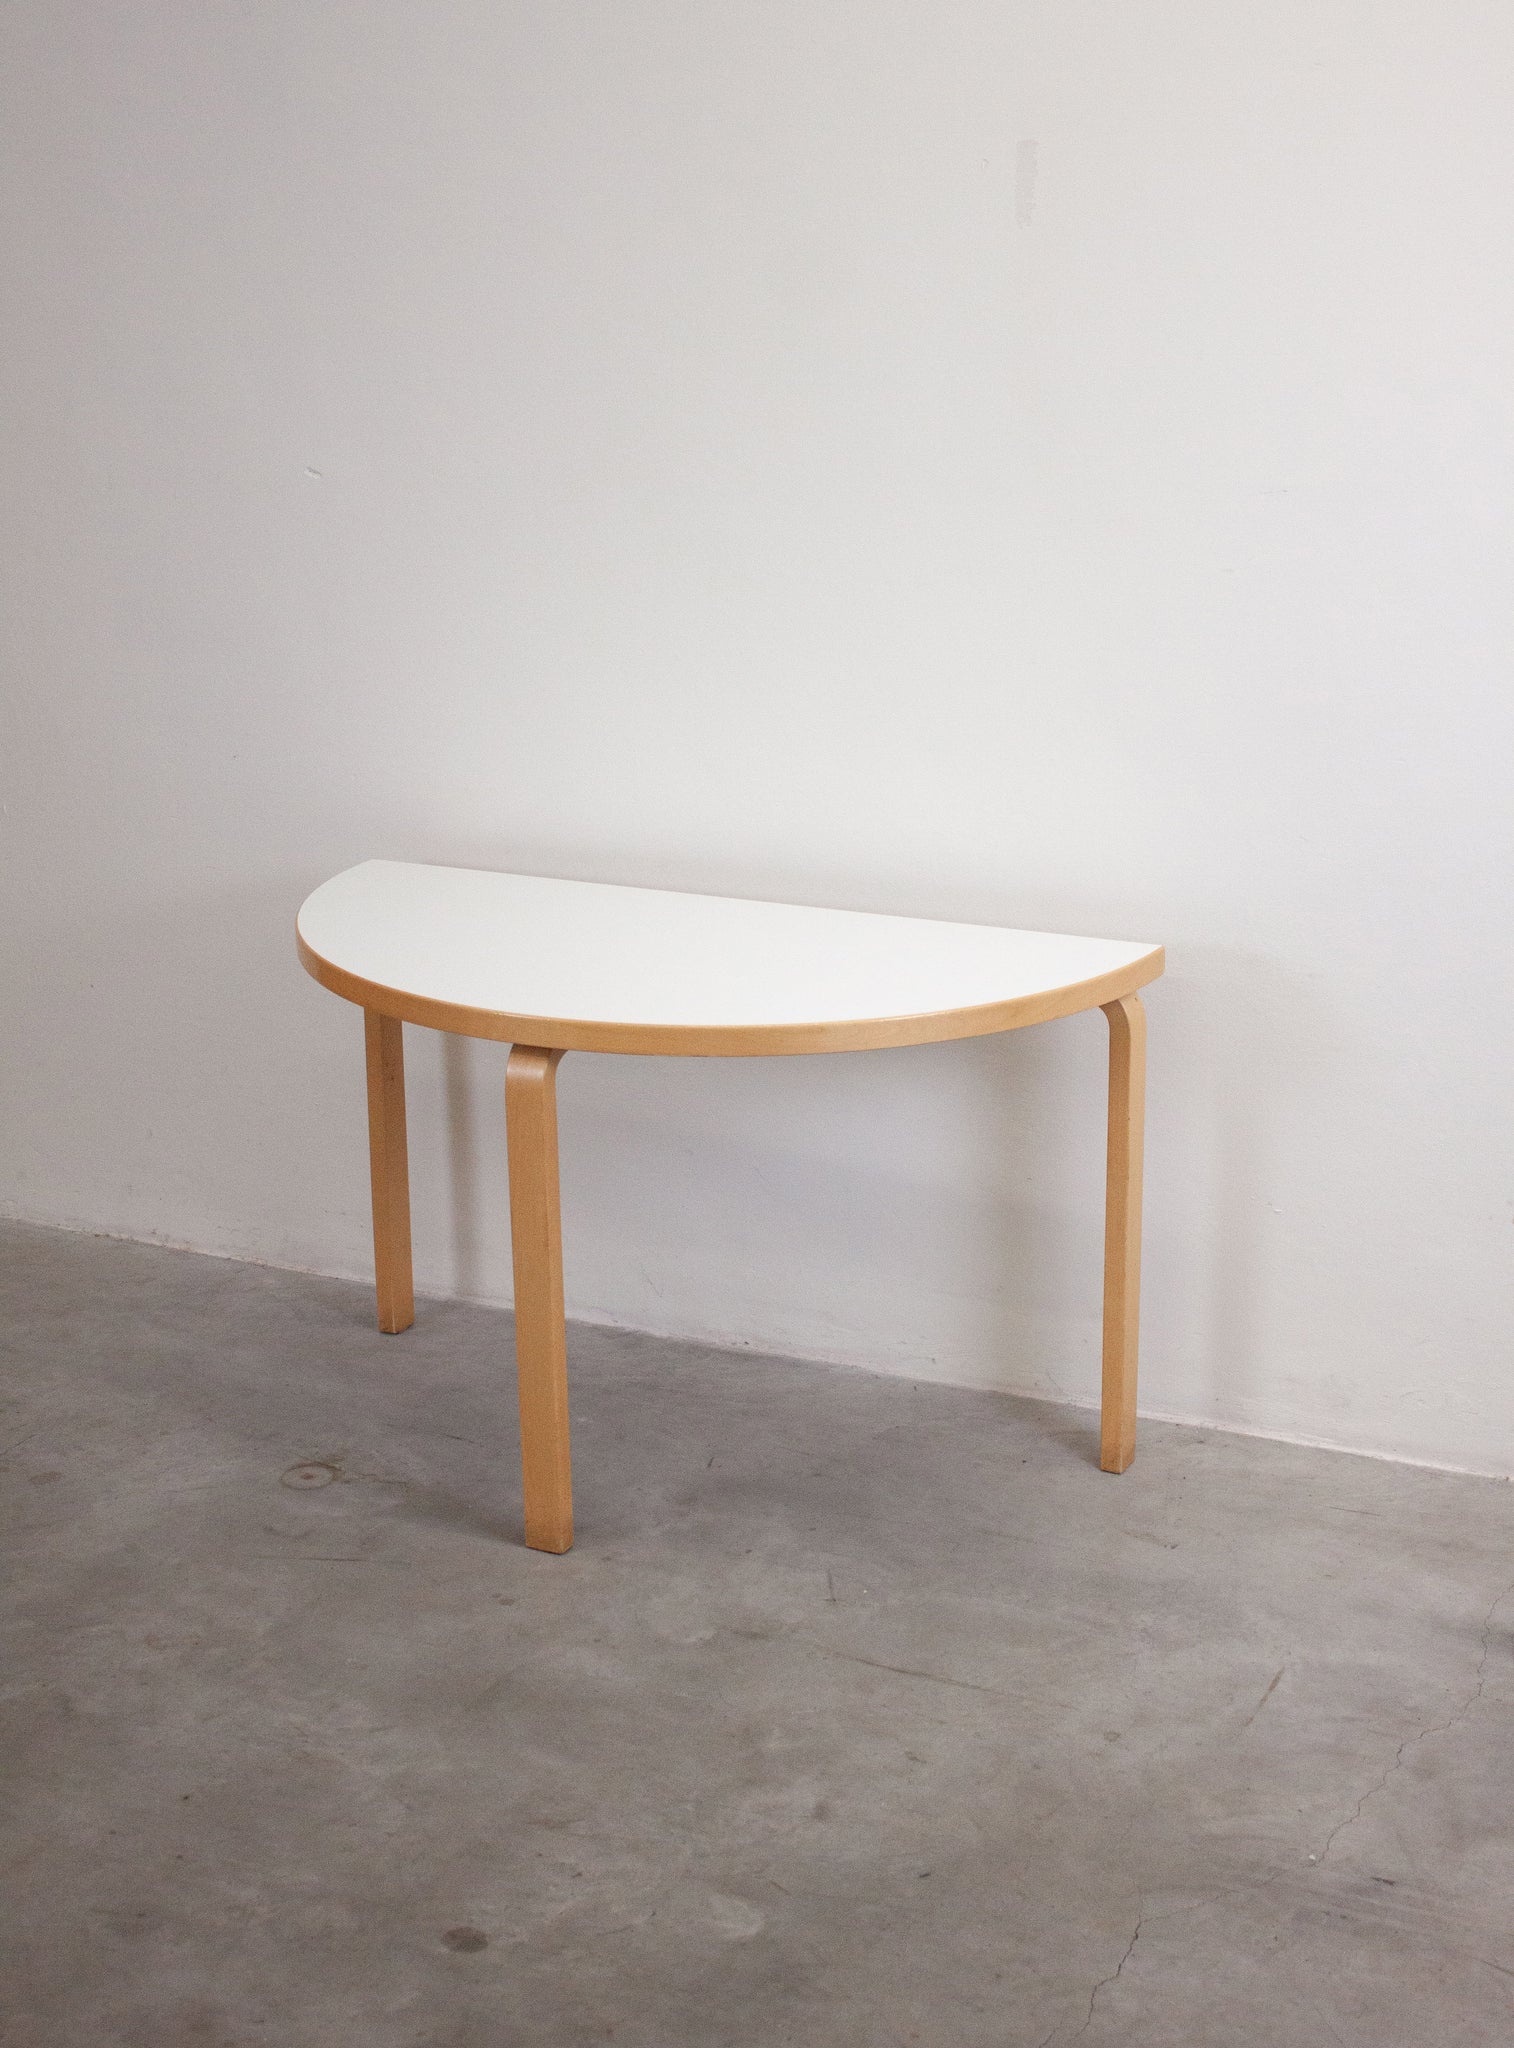 Artek Model 95 Half Round Dining Table by Alvar Aalto (White)